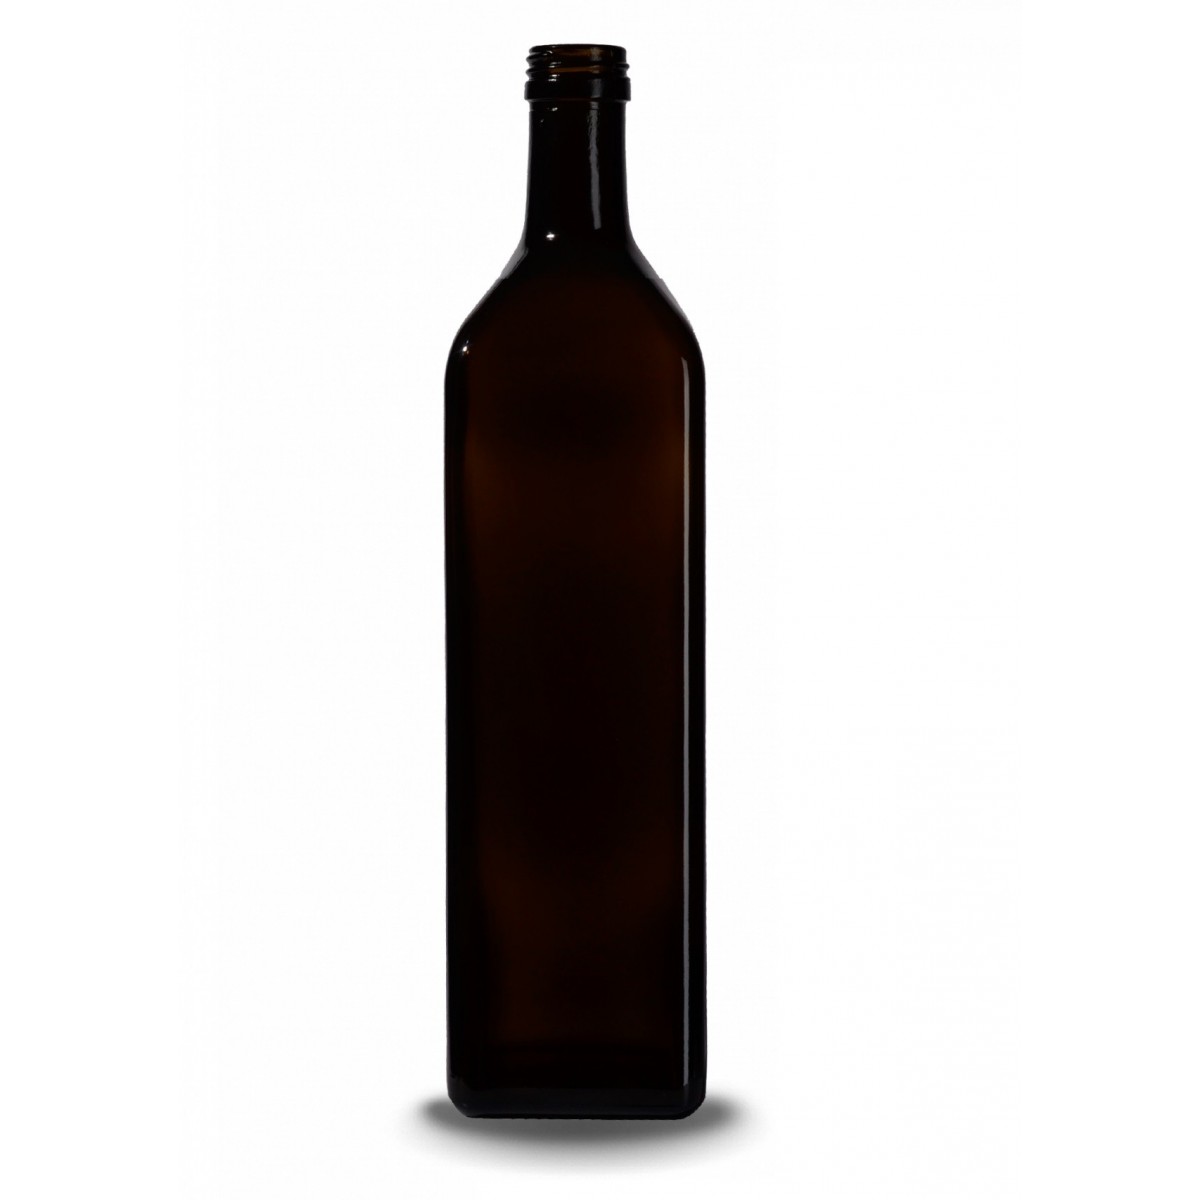 Stiklinis butelis aliejui Marasca, 1 l., t.žalias